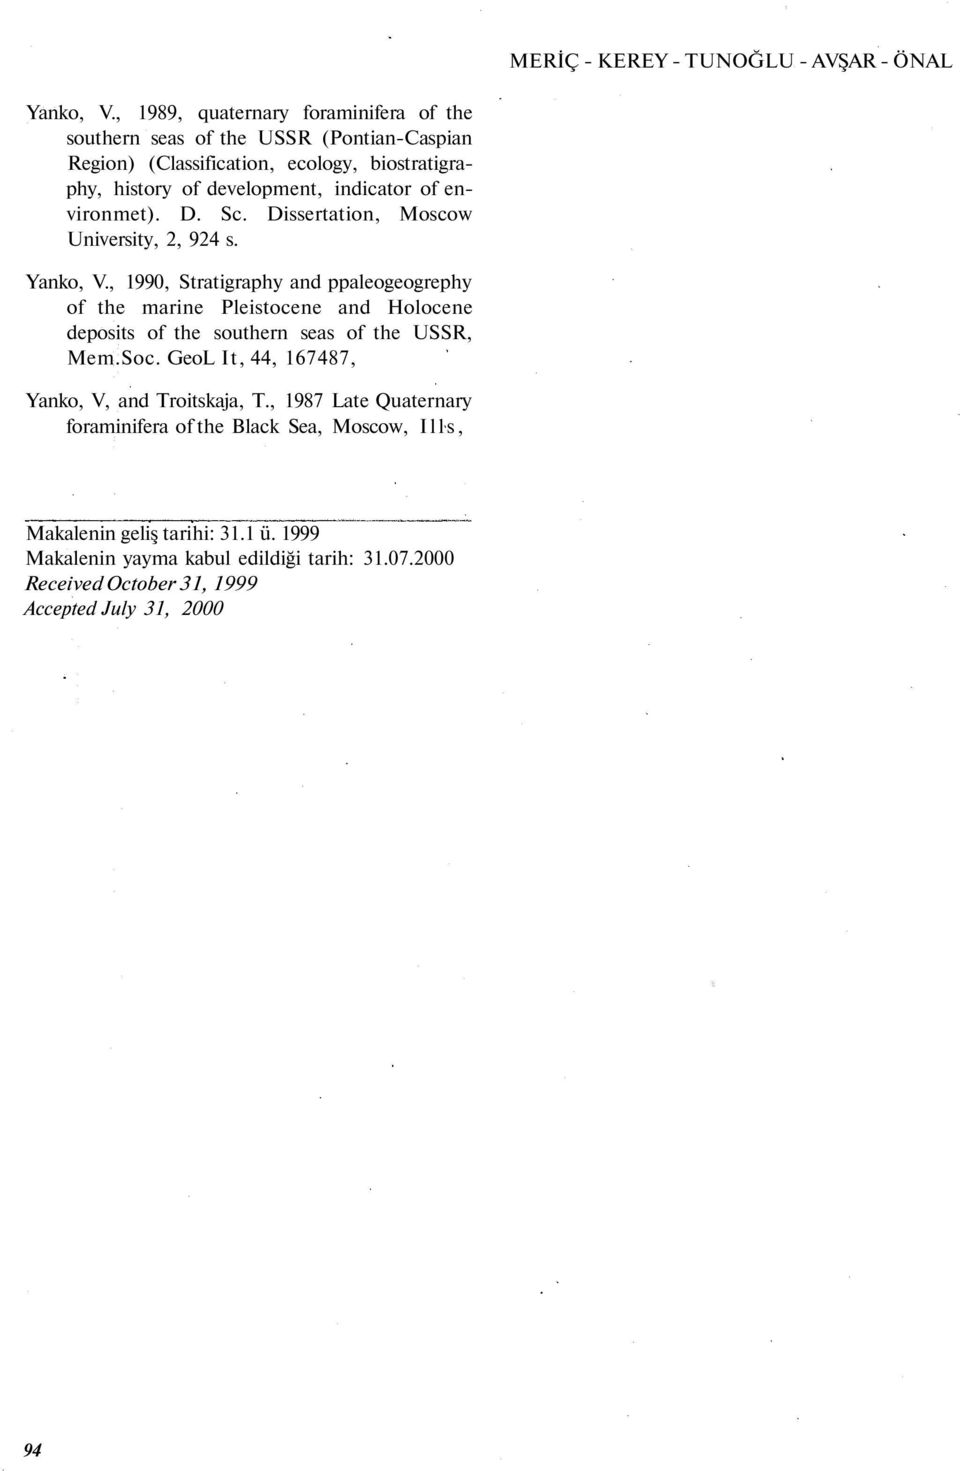 of environmet). D. Sc. Dissertation, Moscow University, 2, 924 s. Yanko, V.